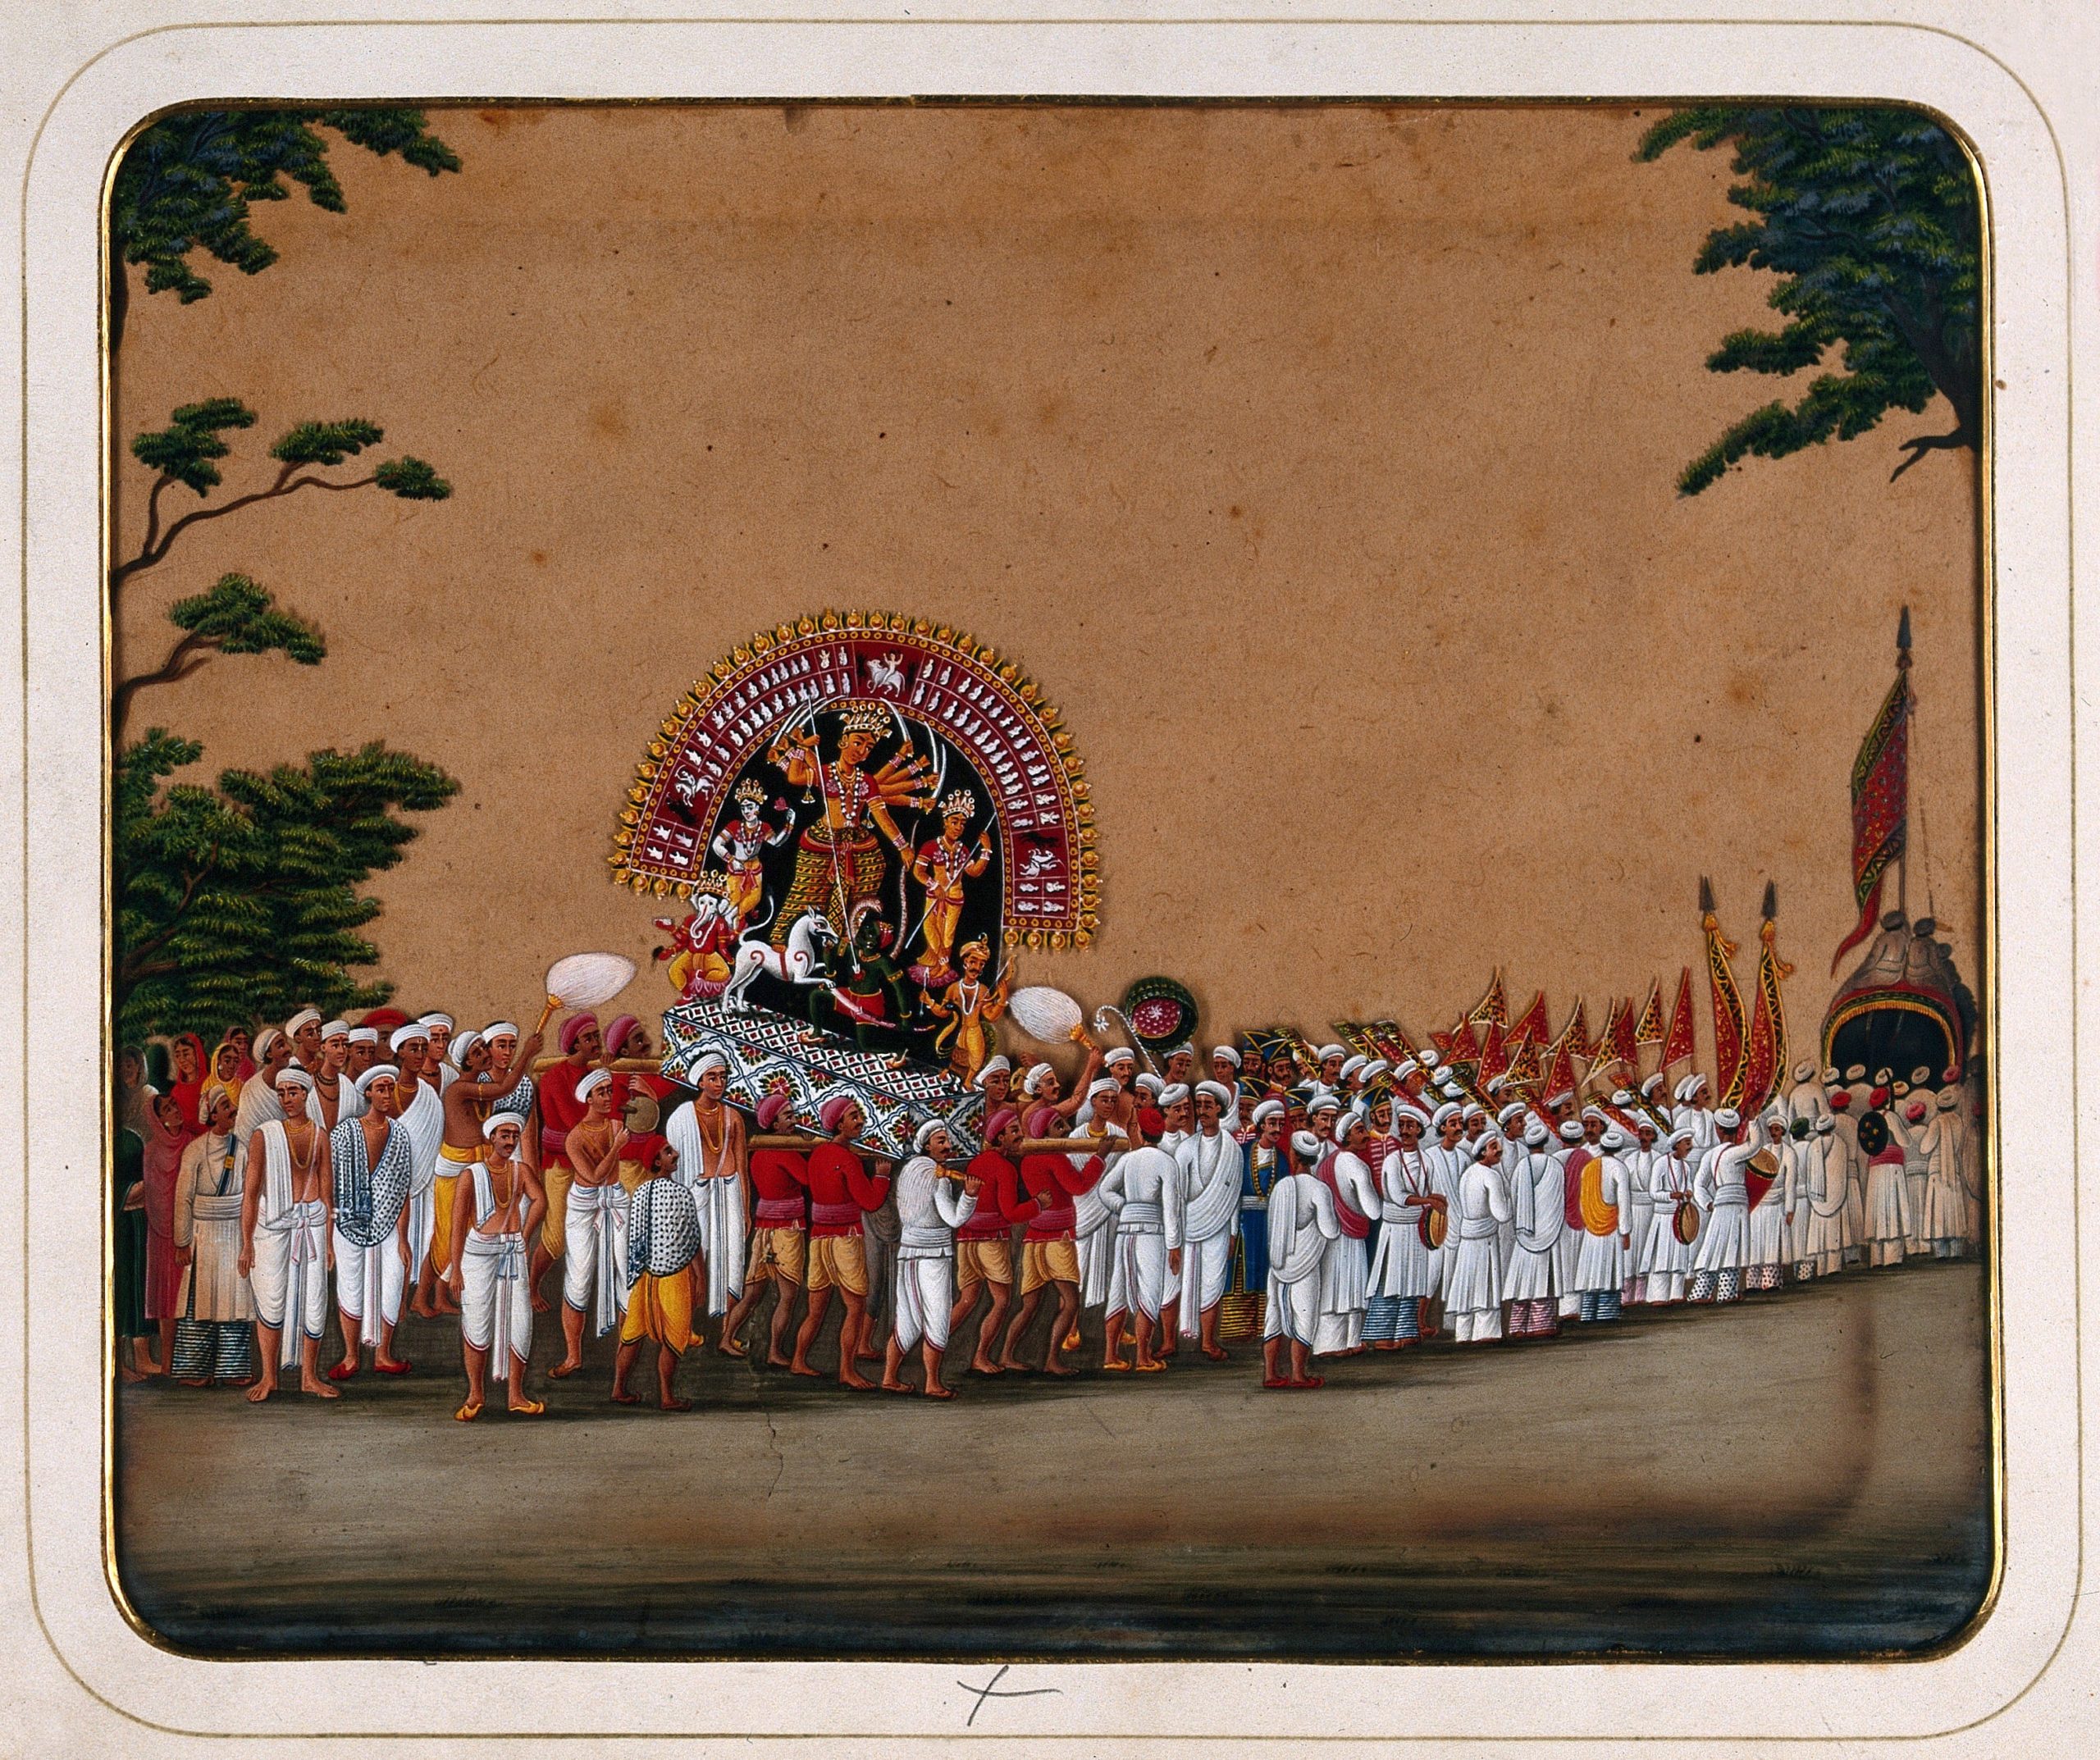 Durga Puja: una procesión con un ídolo de Durga para honrar su victoria sobre el mal, siglo XIX en Una colección de trajes, tipos y ocupaciones indias, gouache sobre mica (Biblioteca Wellcome, CC BY 4.0)